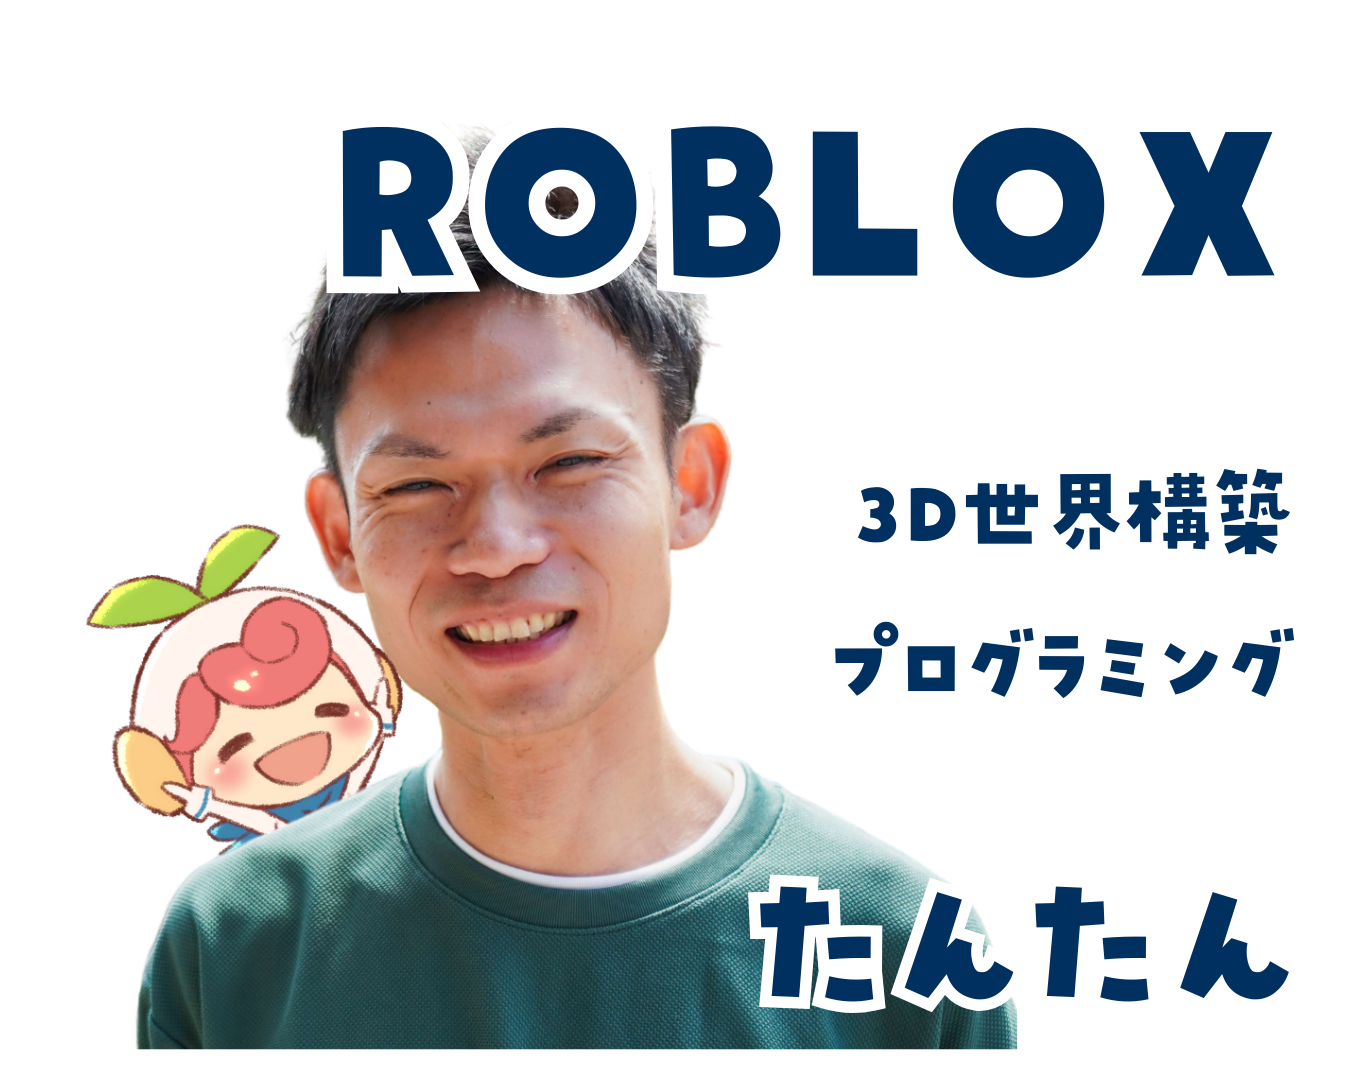 ROBLOXゲーム制作コース。講師たんたん。3D世界構築、プログラミング。